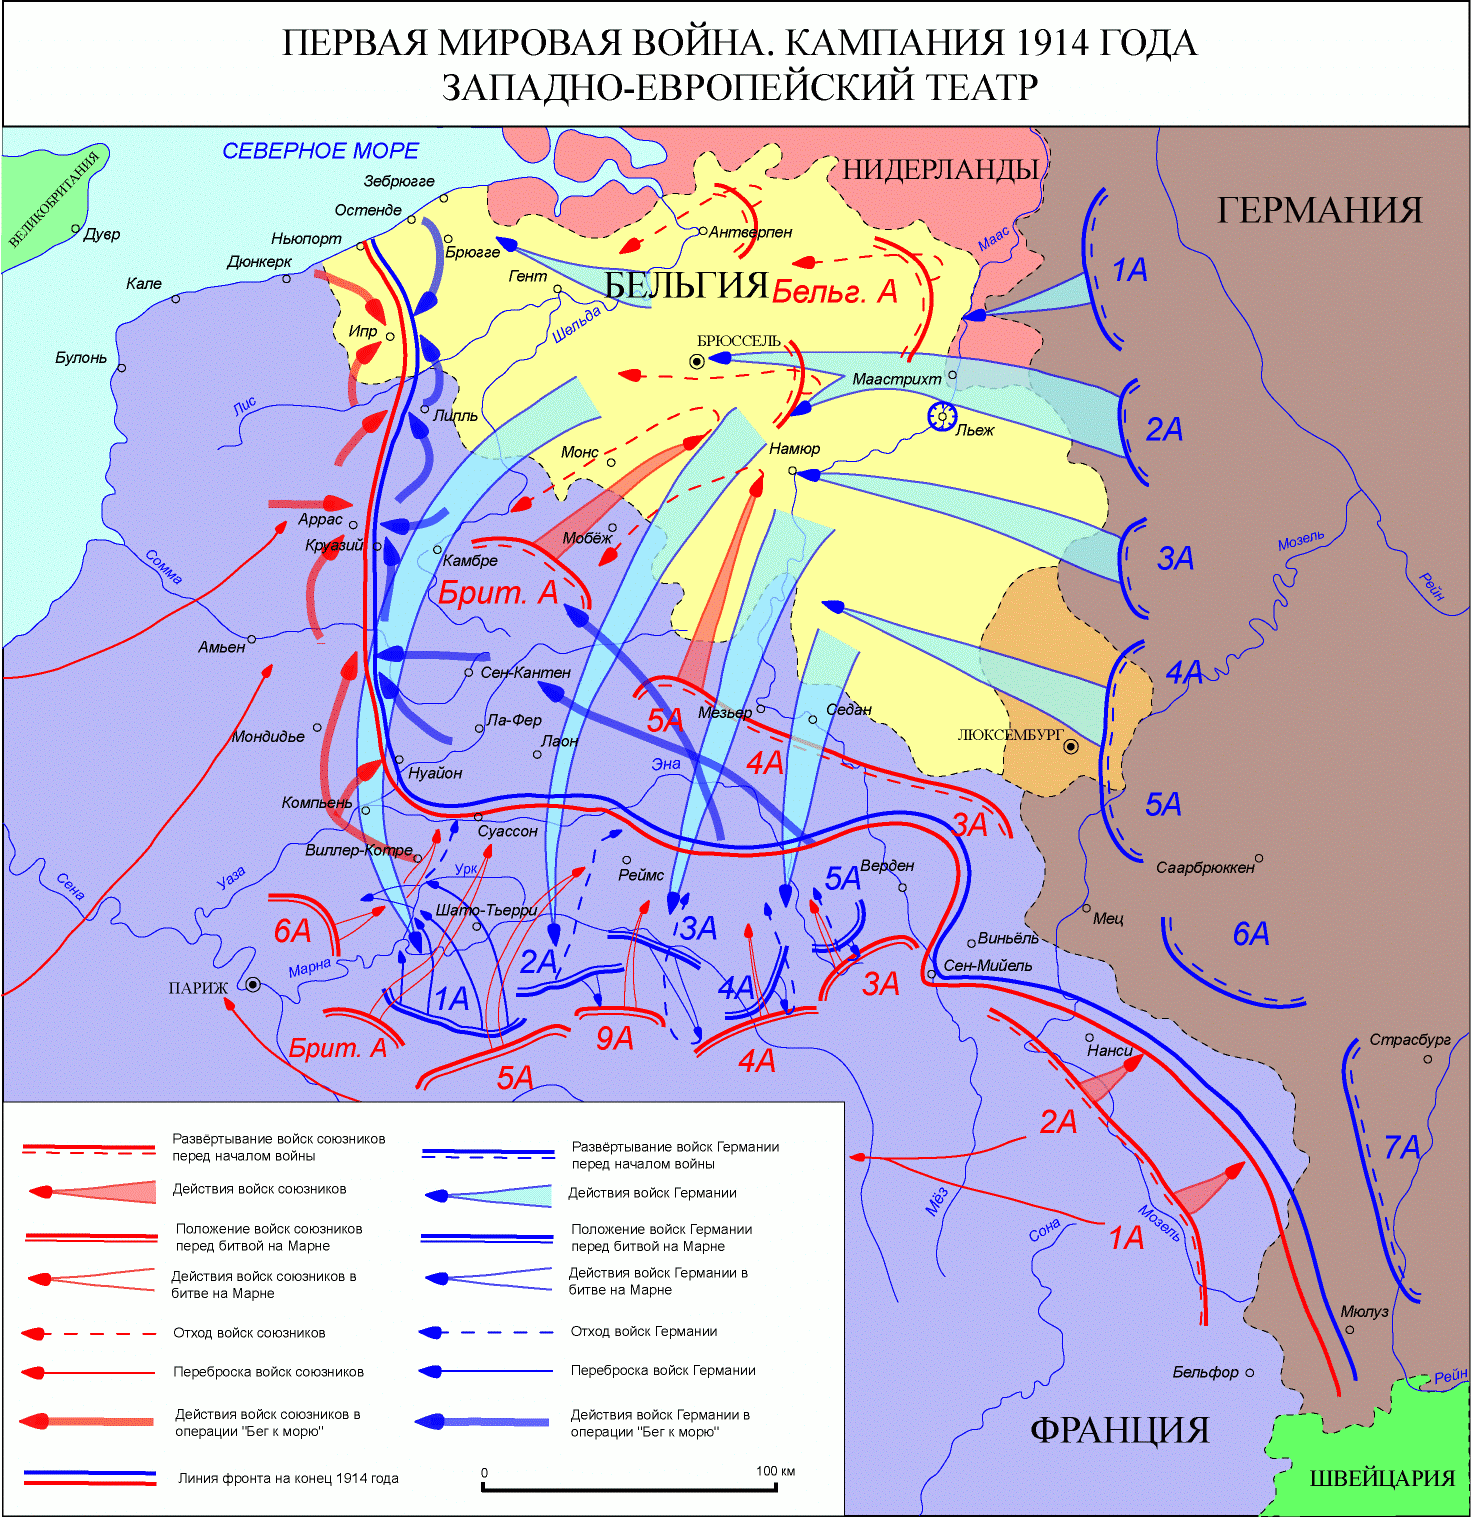 Основные сражения первой мировой войны 1914